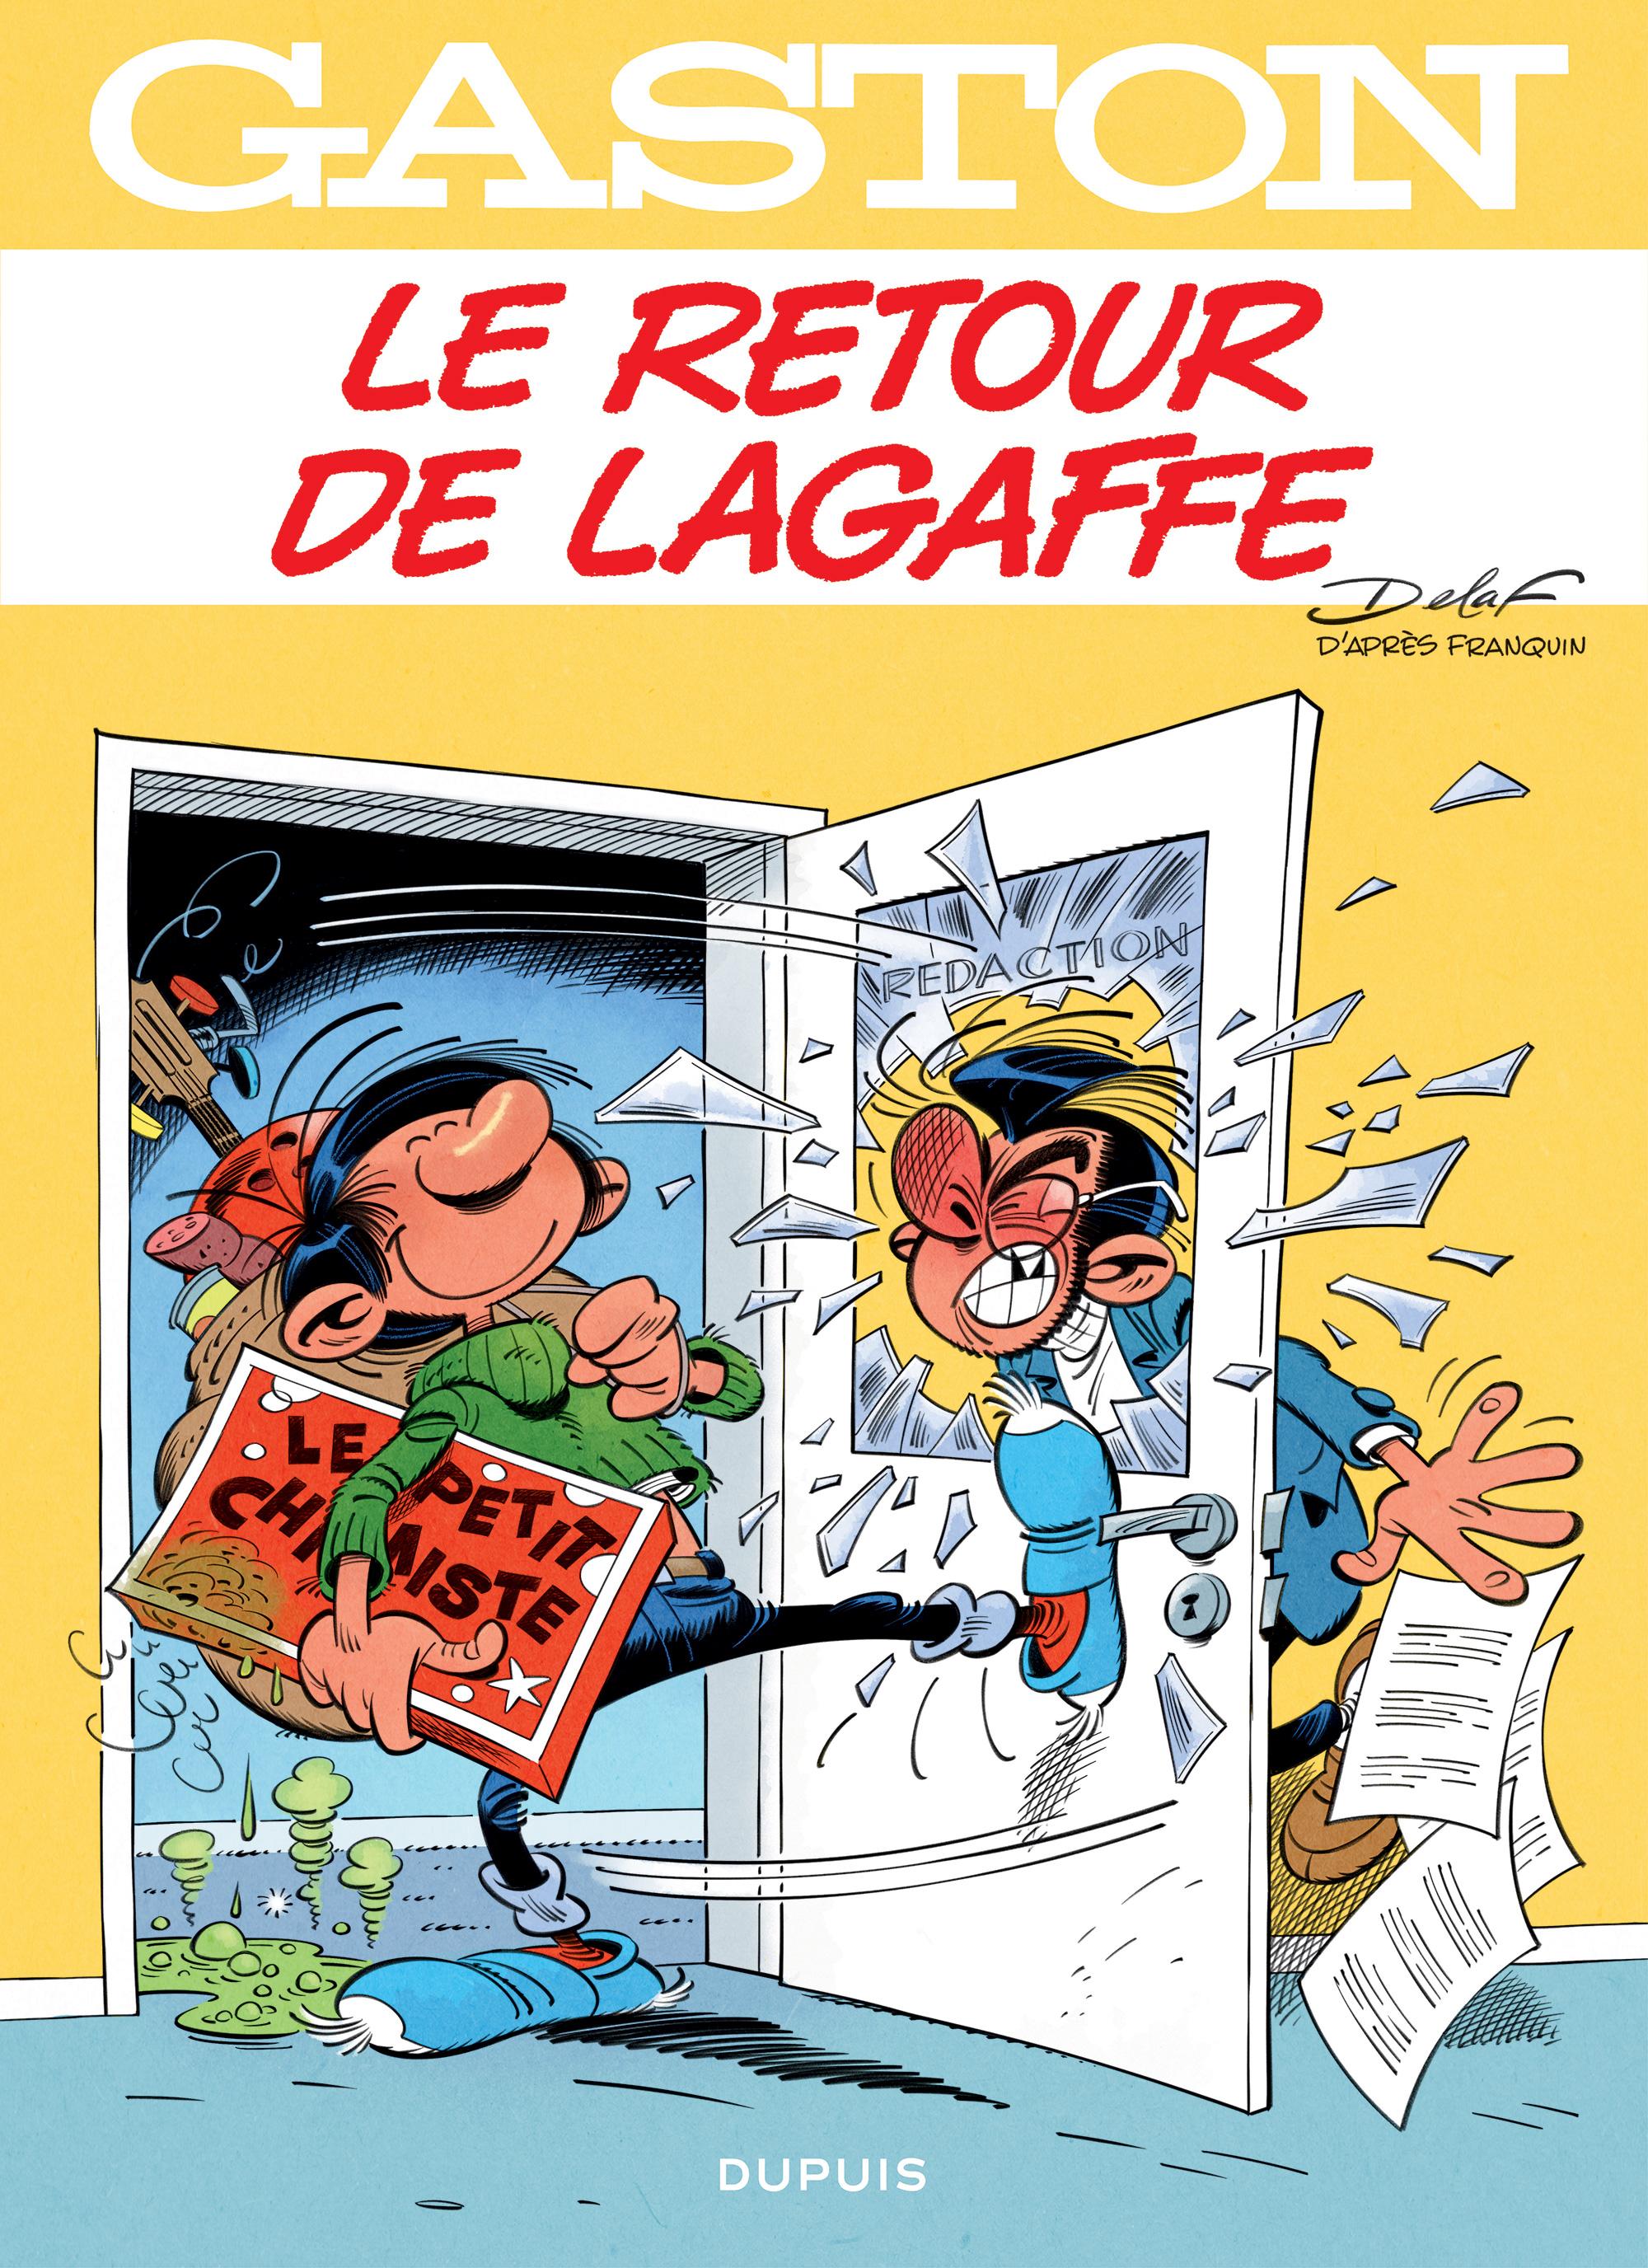 La couverture du 22e tome de Gaston Lagaffe "Le retour de Lagaffe". [Editions Dupuis]